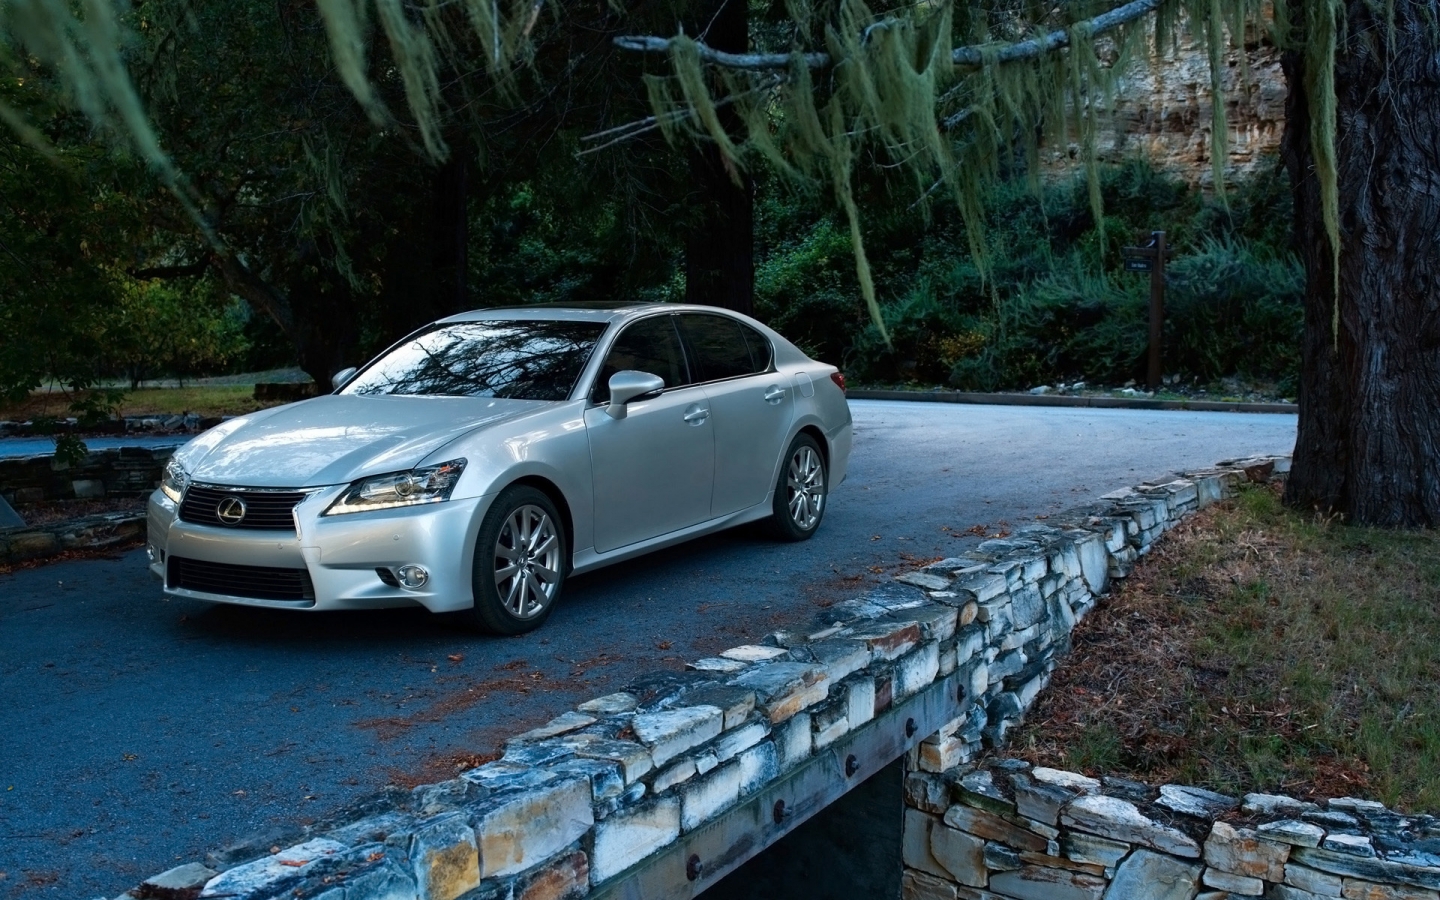 2013 Lexus GS 350 for 1440 x 900 widescreen resolution